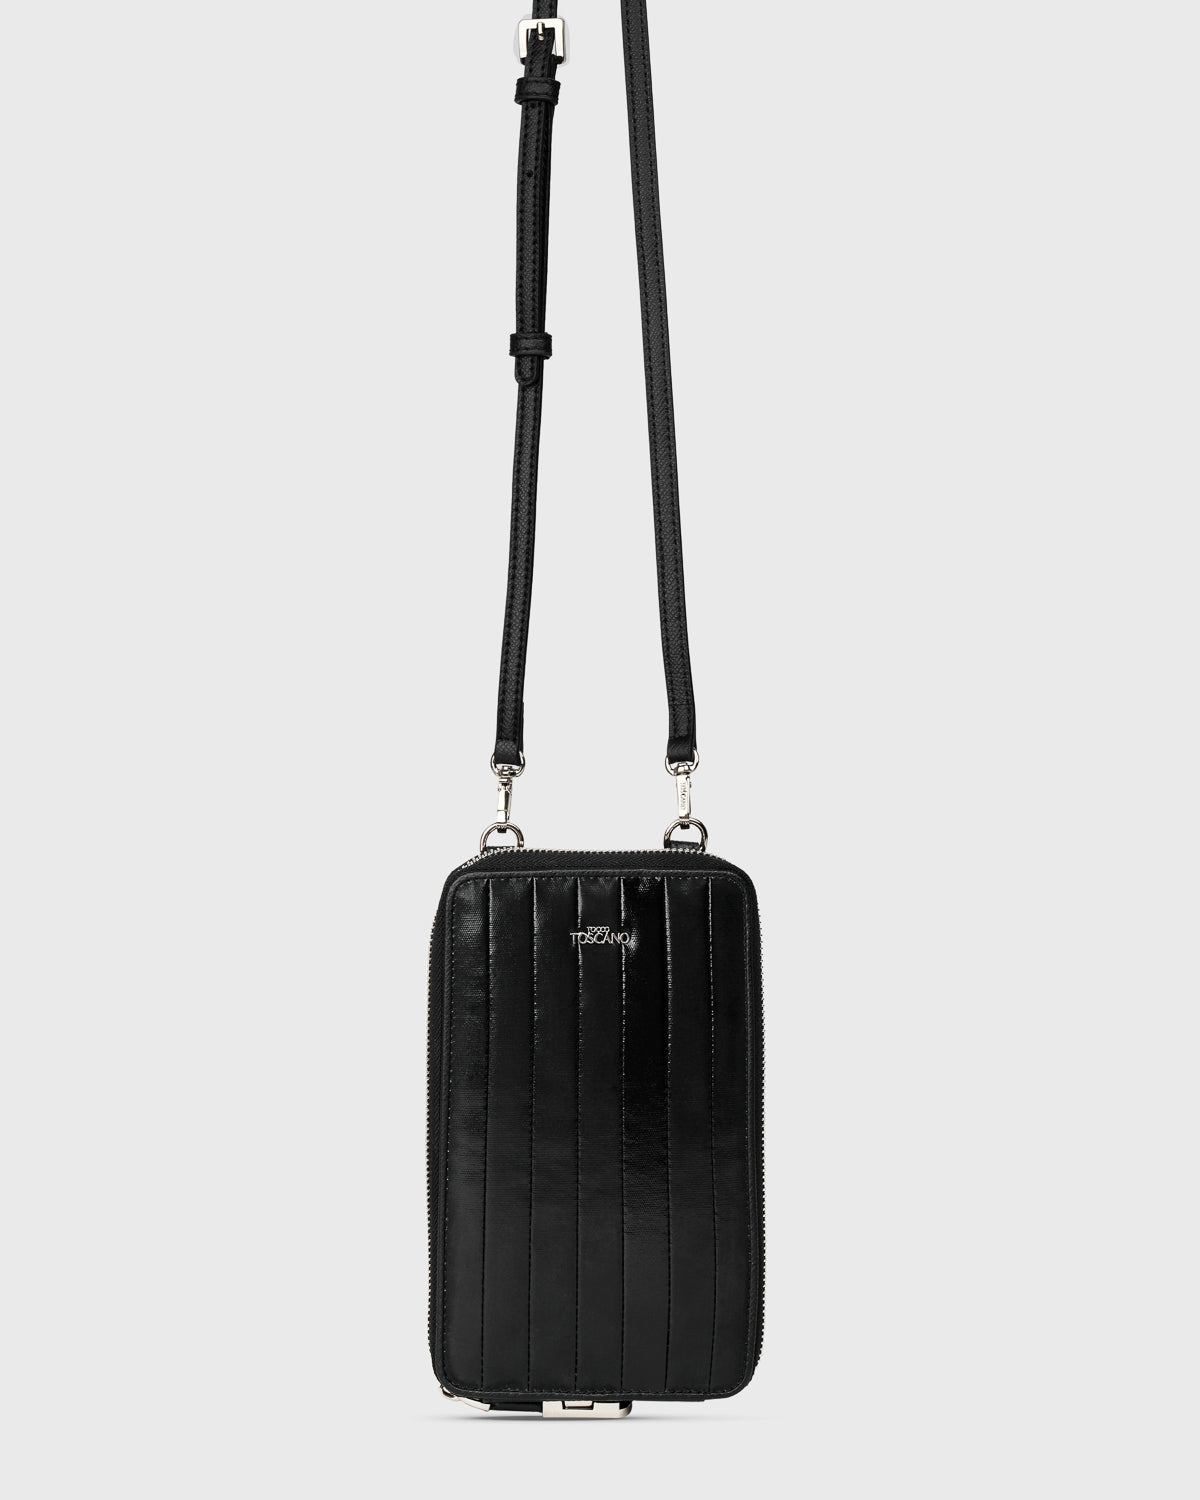 Gem 10mm Adjustable Bag Strap (Black)